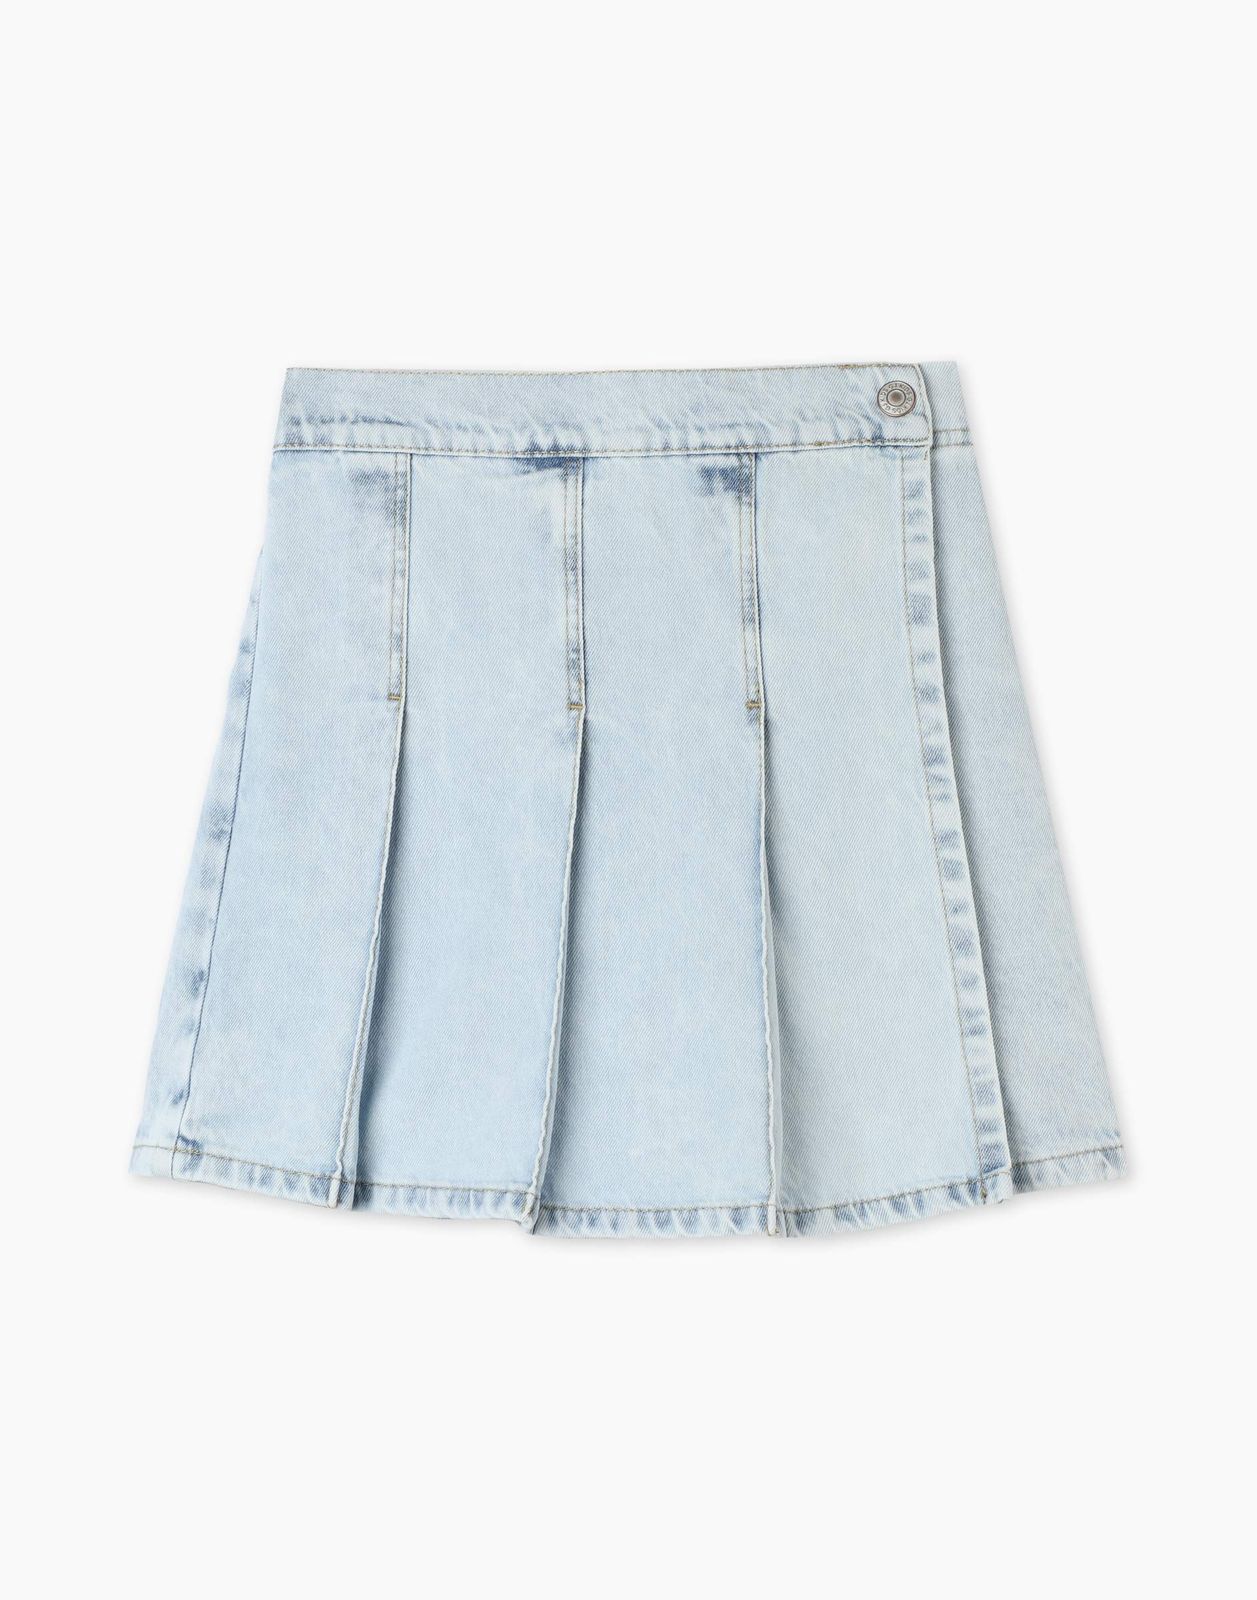 Джинсовая юбка-шорты Gloria Jeans GSK018325 4-6л/110-116 для девочки асимметричная джинсовая юбка шорты